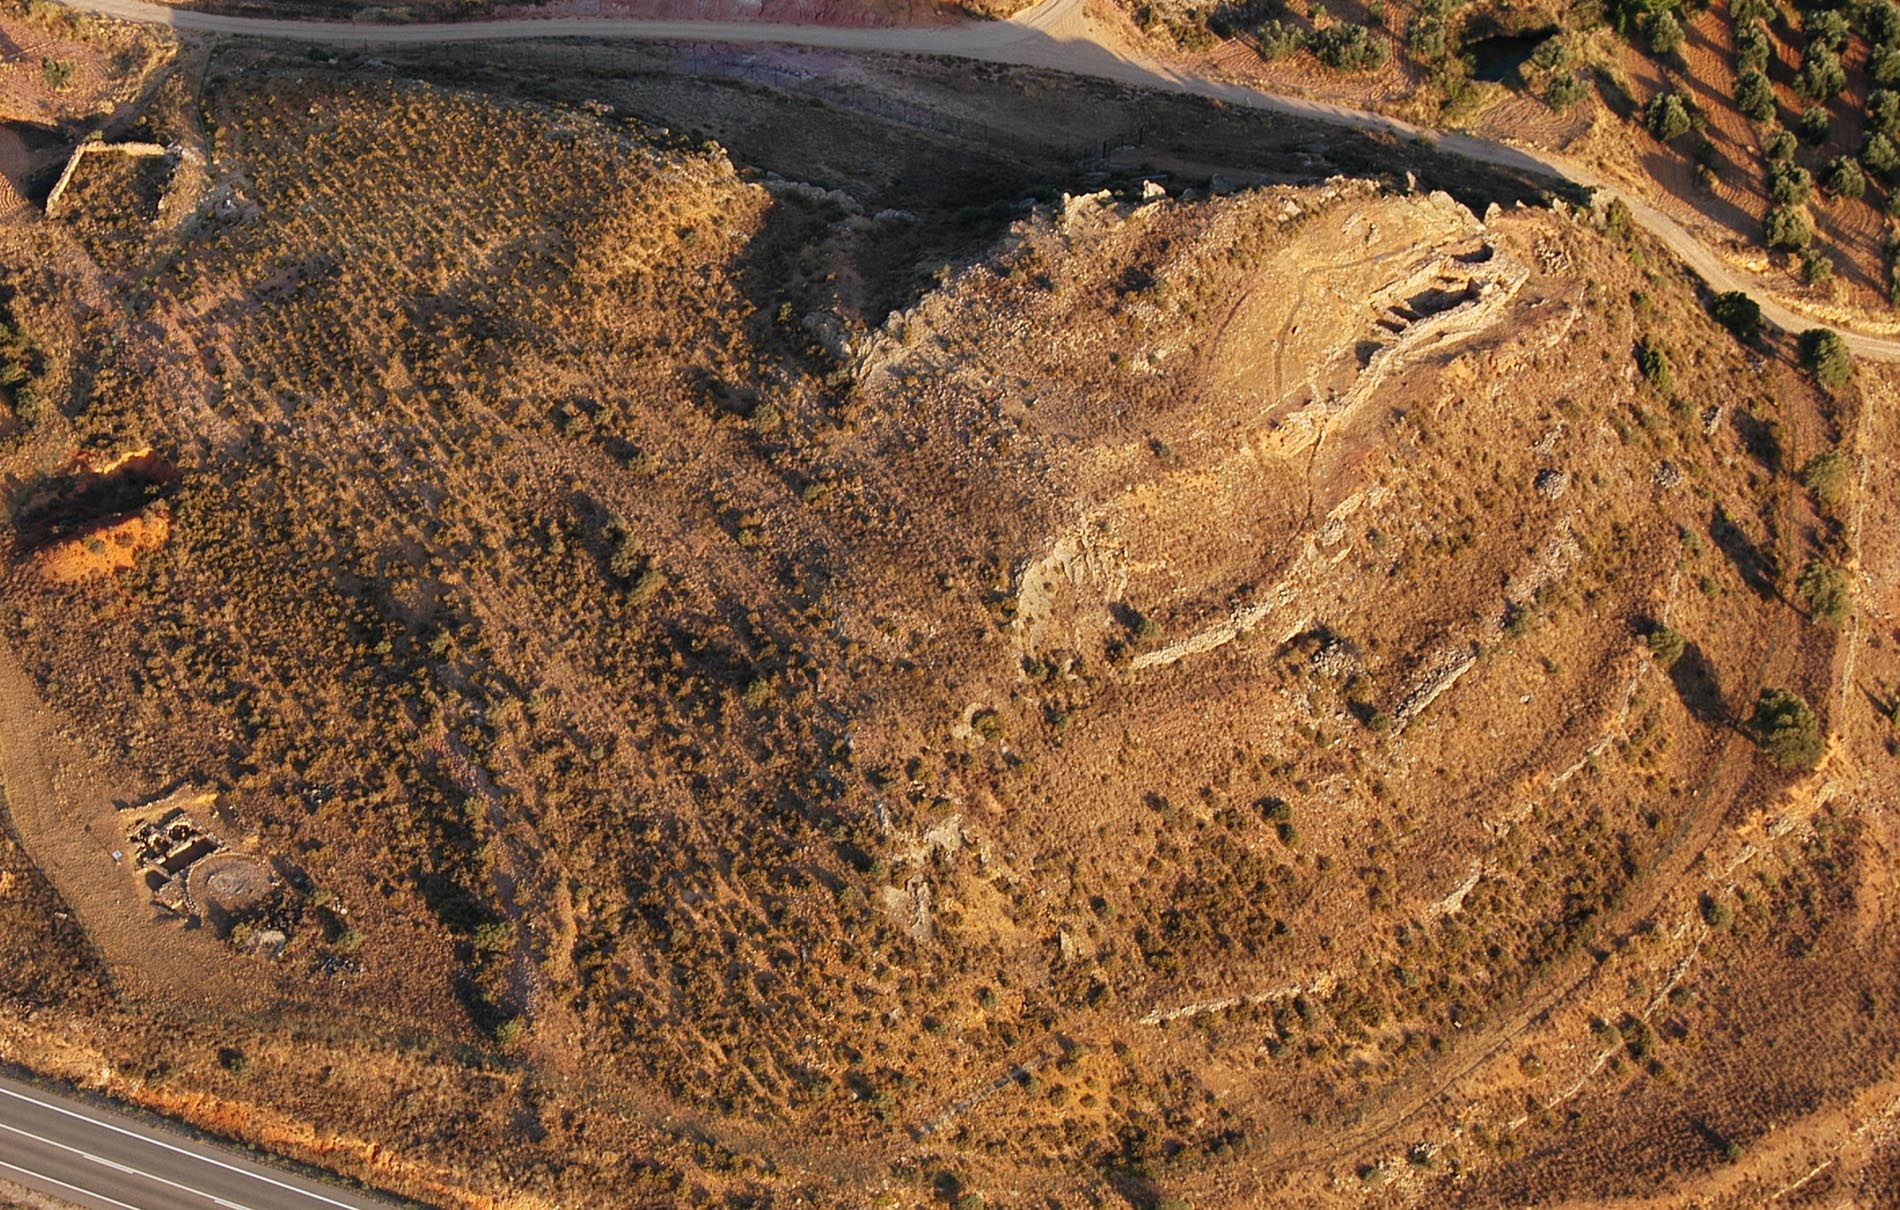 Vista aérea del yacimiento de Cabezo de la Guardia, Alcorisa. Foto: Consorcio Patrimonio Ibérico de Aragón